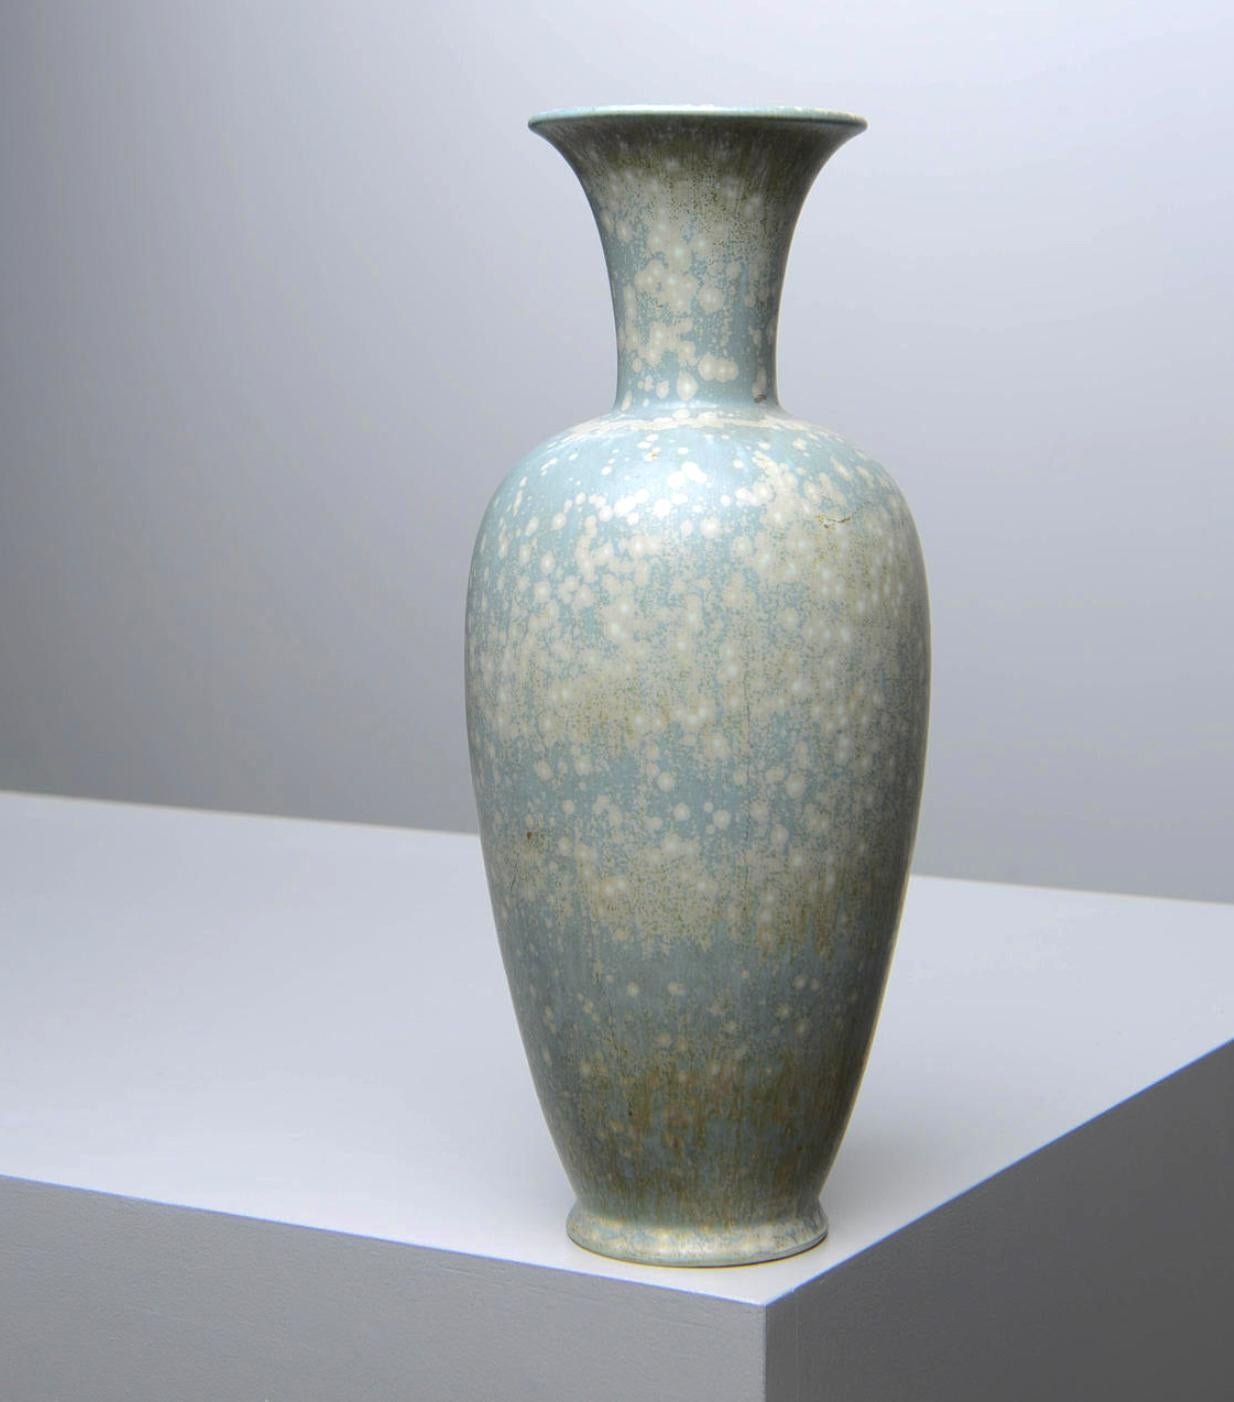 Eine Vase aus Steinzeug von Gunnar Nylund für Rostrand. Circa 1950. Melangierte Glasur in Blau/Grün/Beige-Tönen.
Höhe 13,5″.